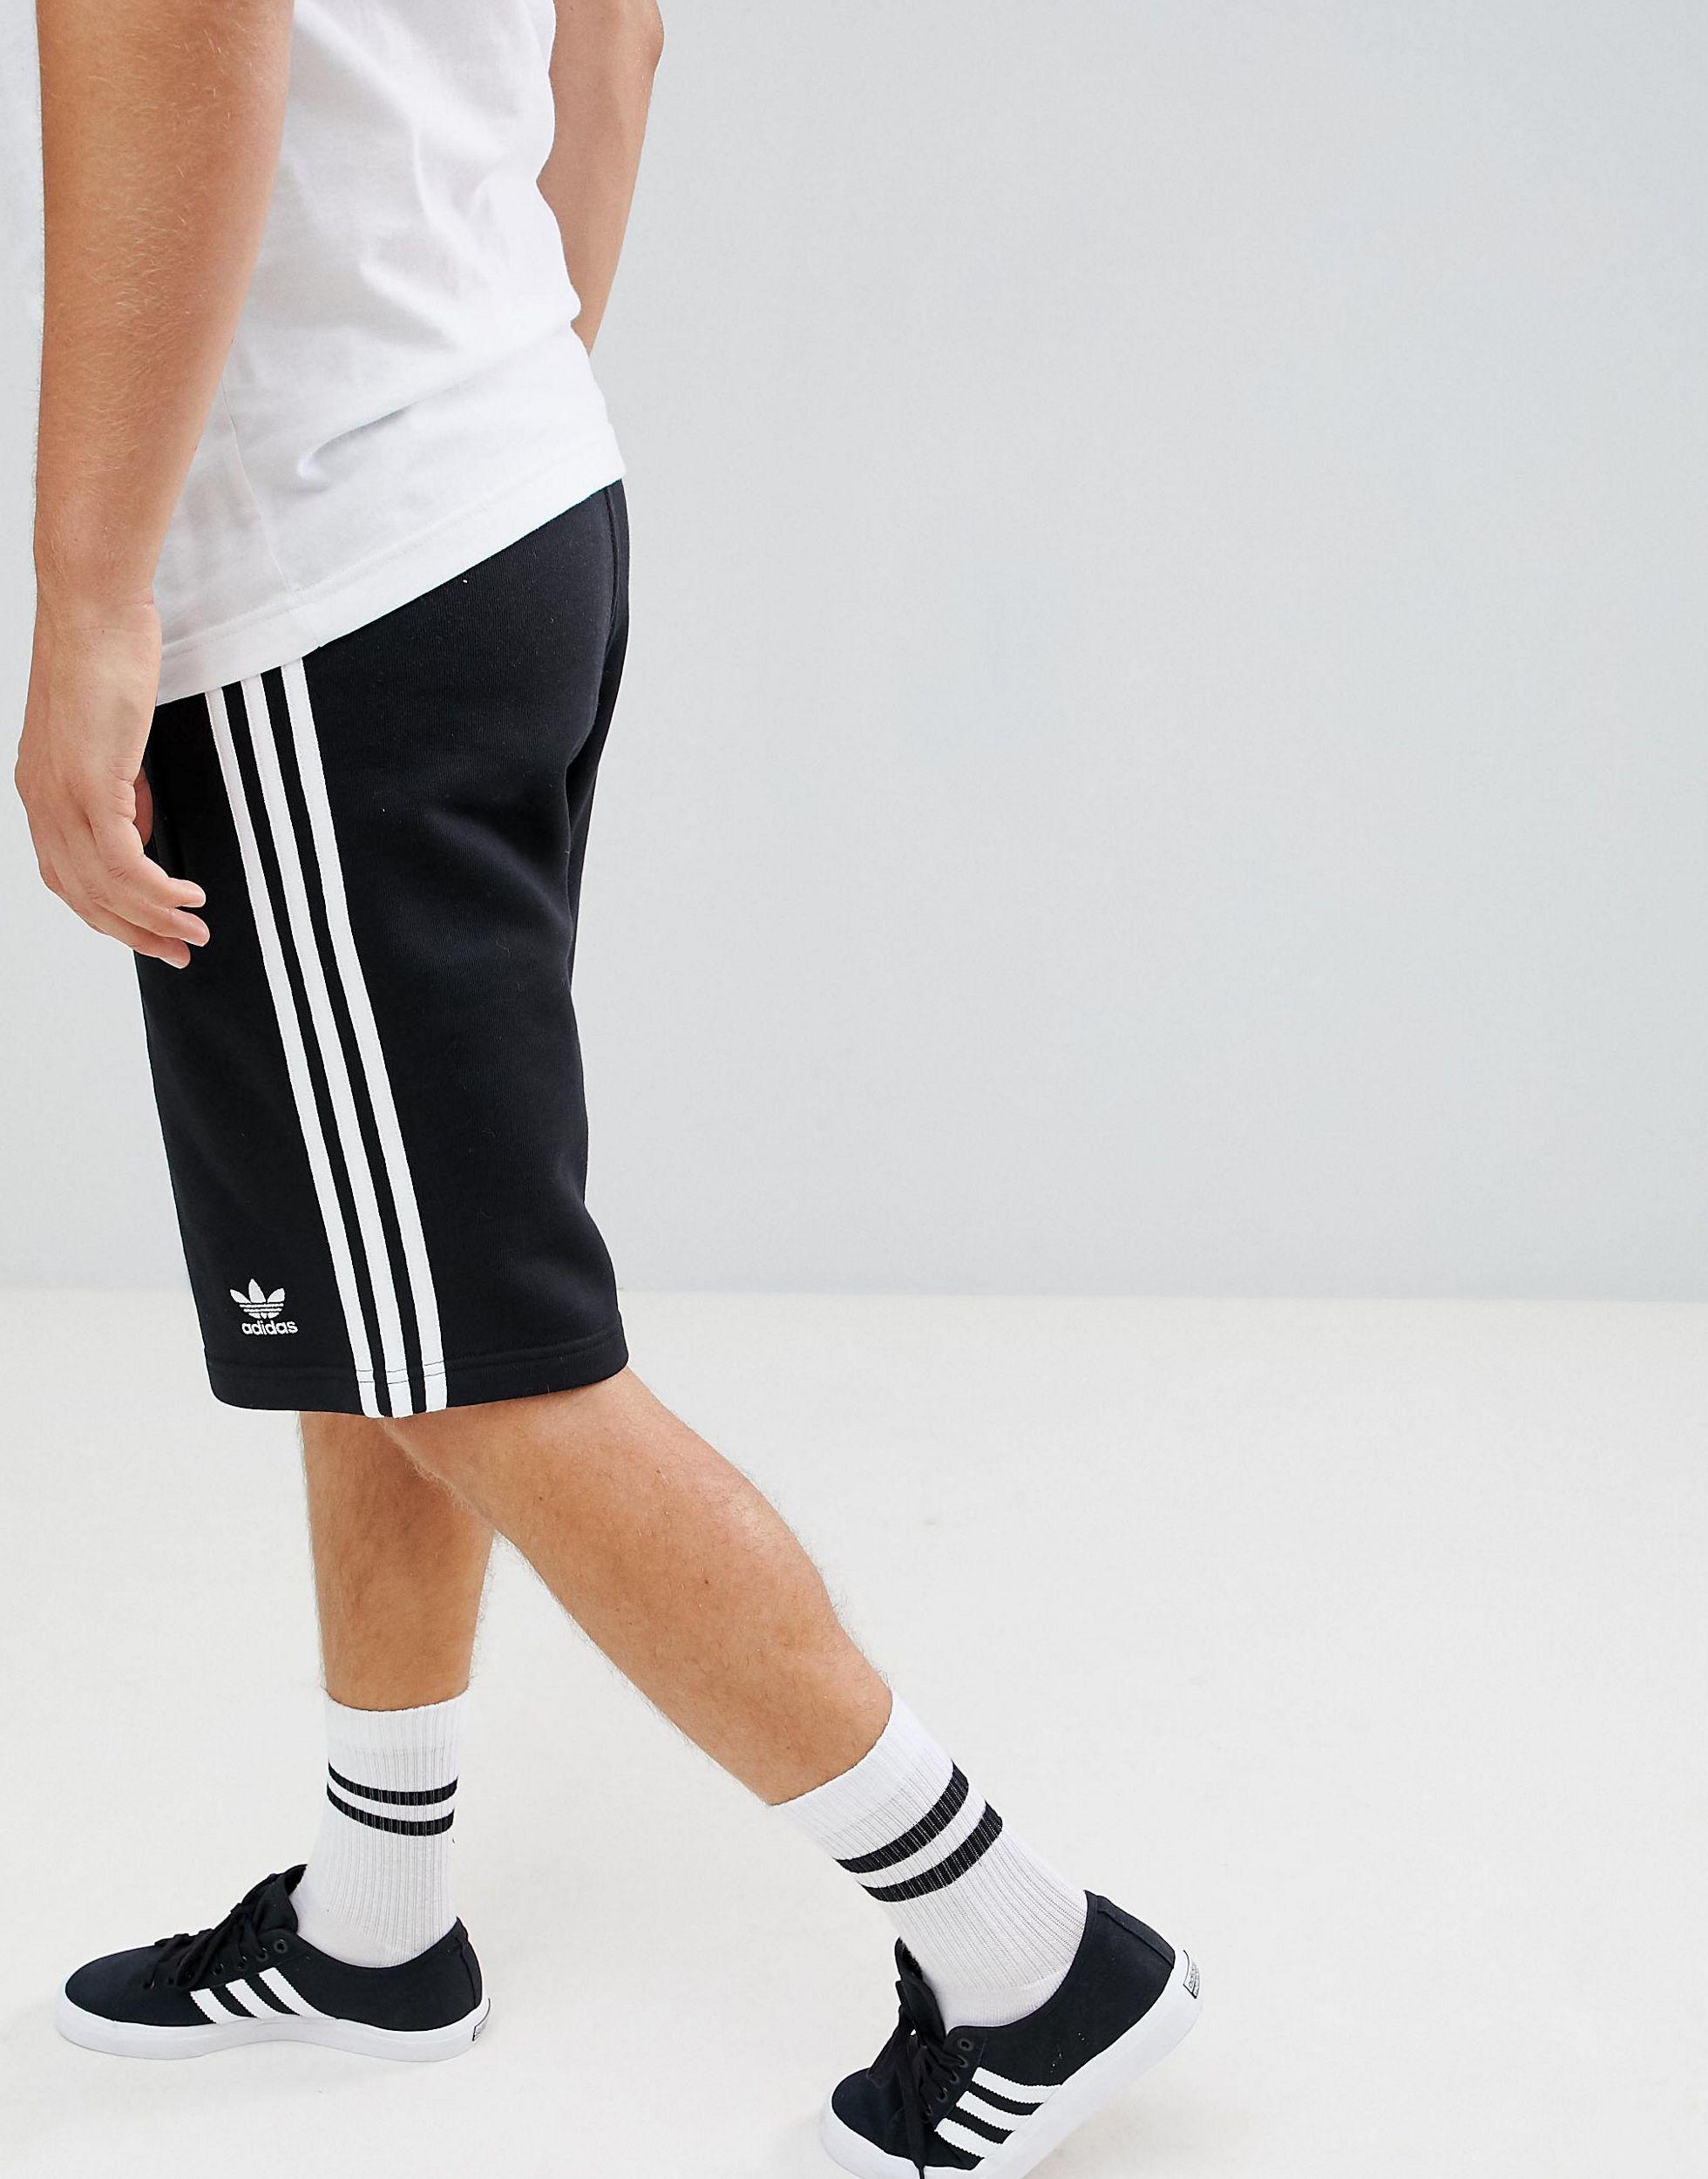 adidas Originals Adicolor Essentials Shorts in Black for Men - Lyst